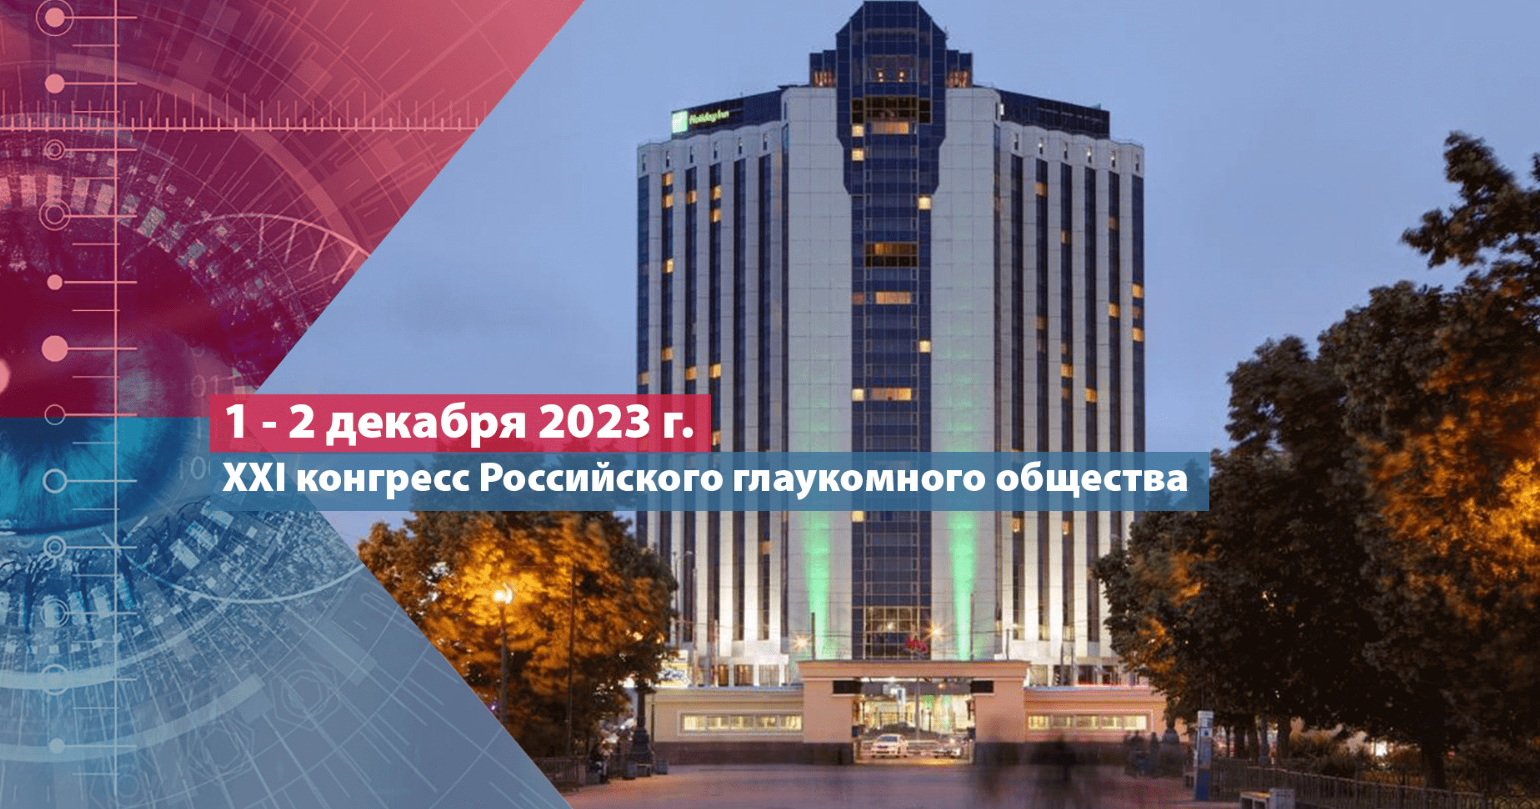 XXI конгресс Российского глаукомного общества